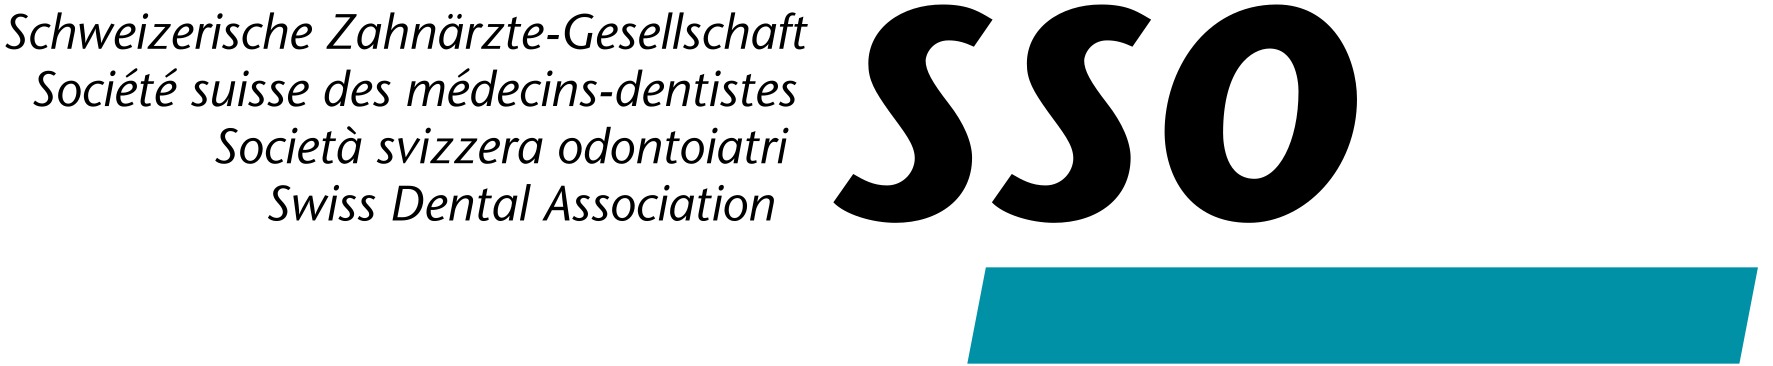 Logo_SSO.jpg